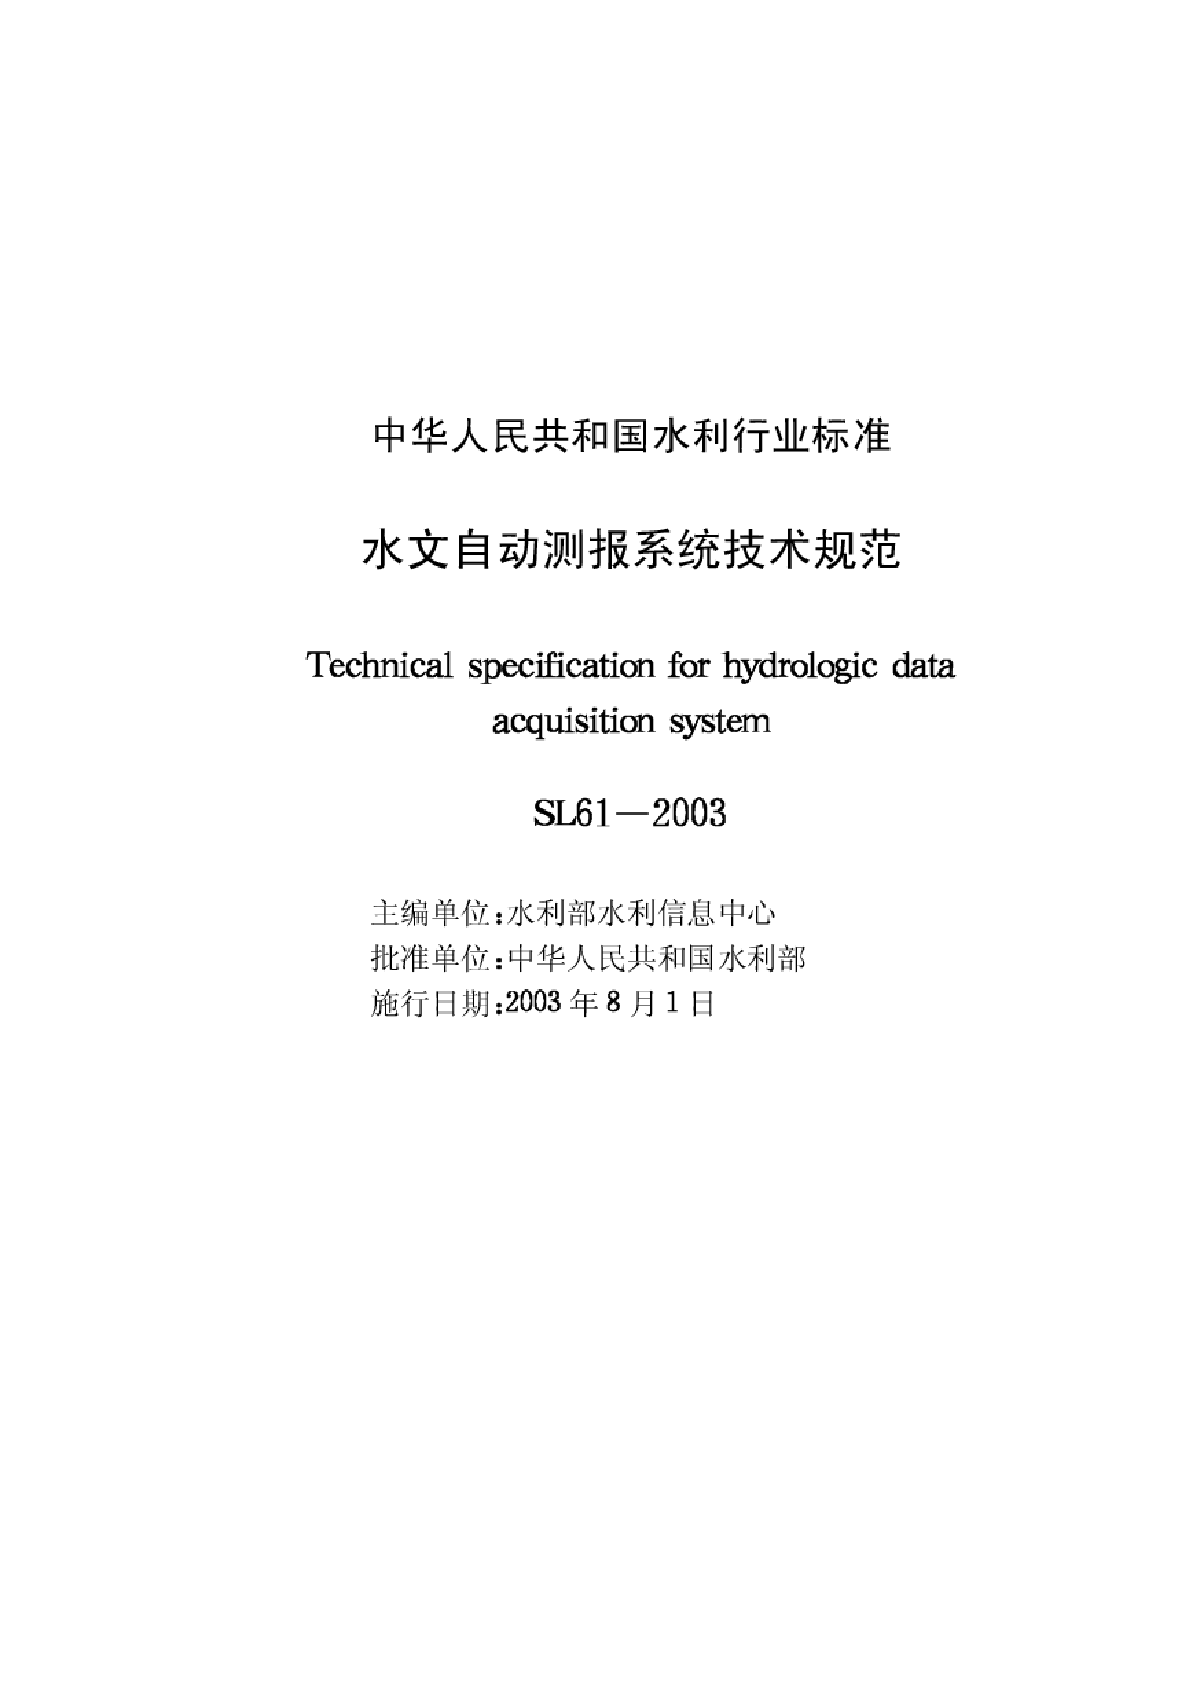 03水文自动测报系统技术规范【SL61-2003】-图二